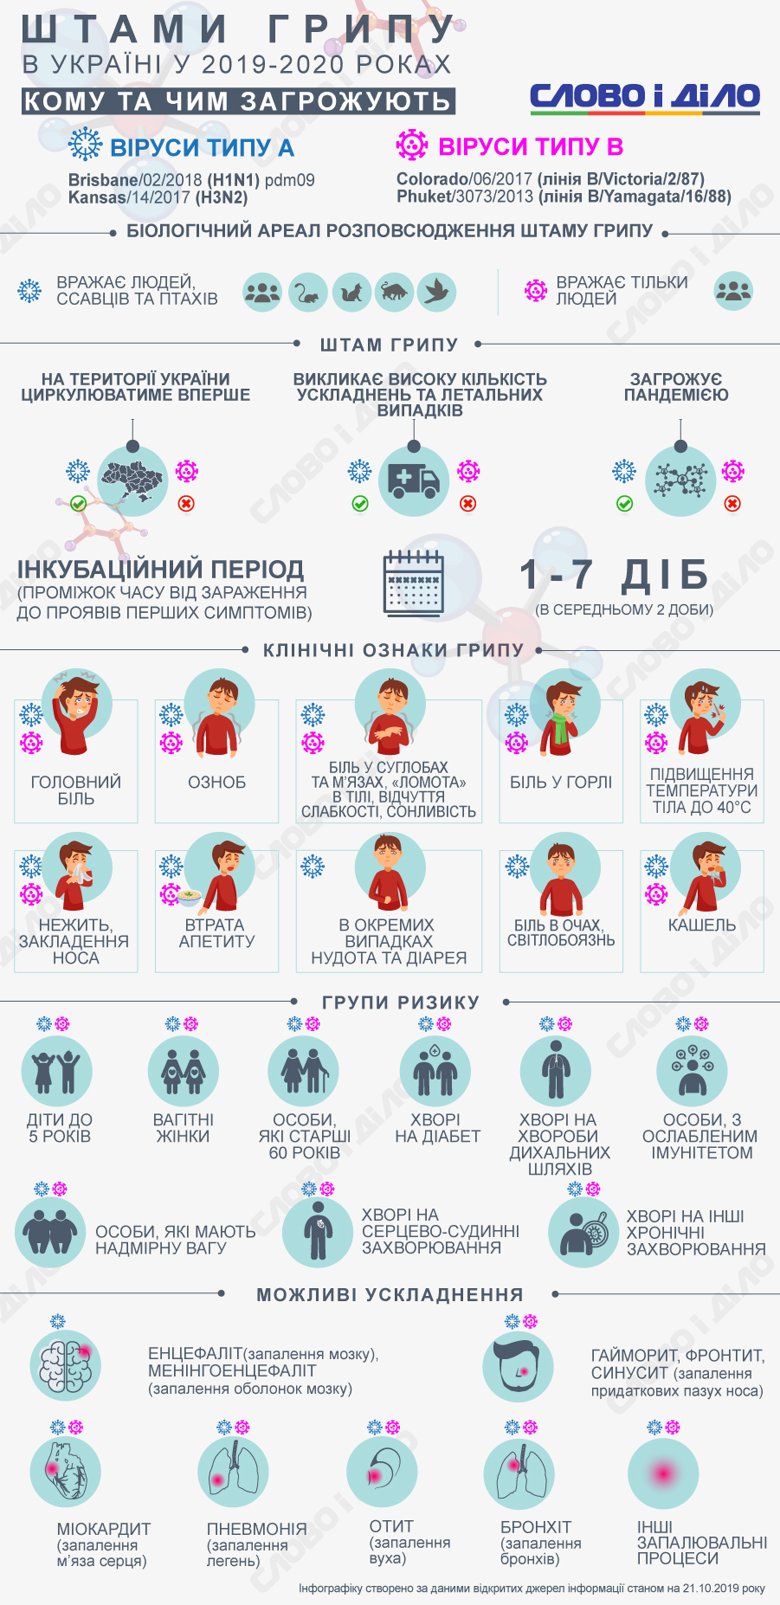 В Україні очікується циркуляція двох нових штамів грипу та ще двох, від яких українці вже частково мають імунітет.